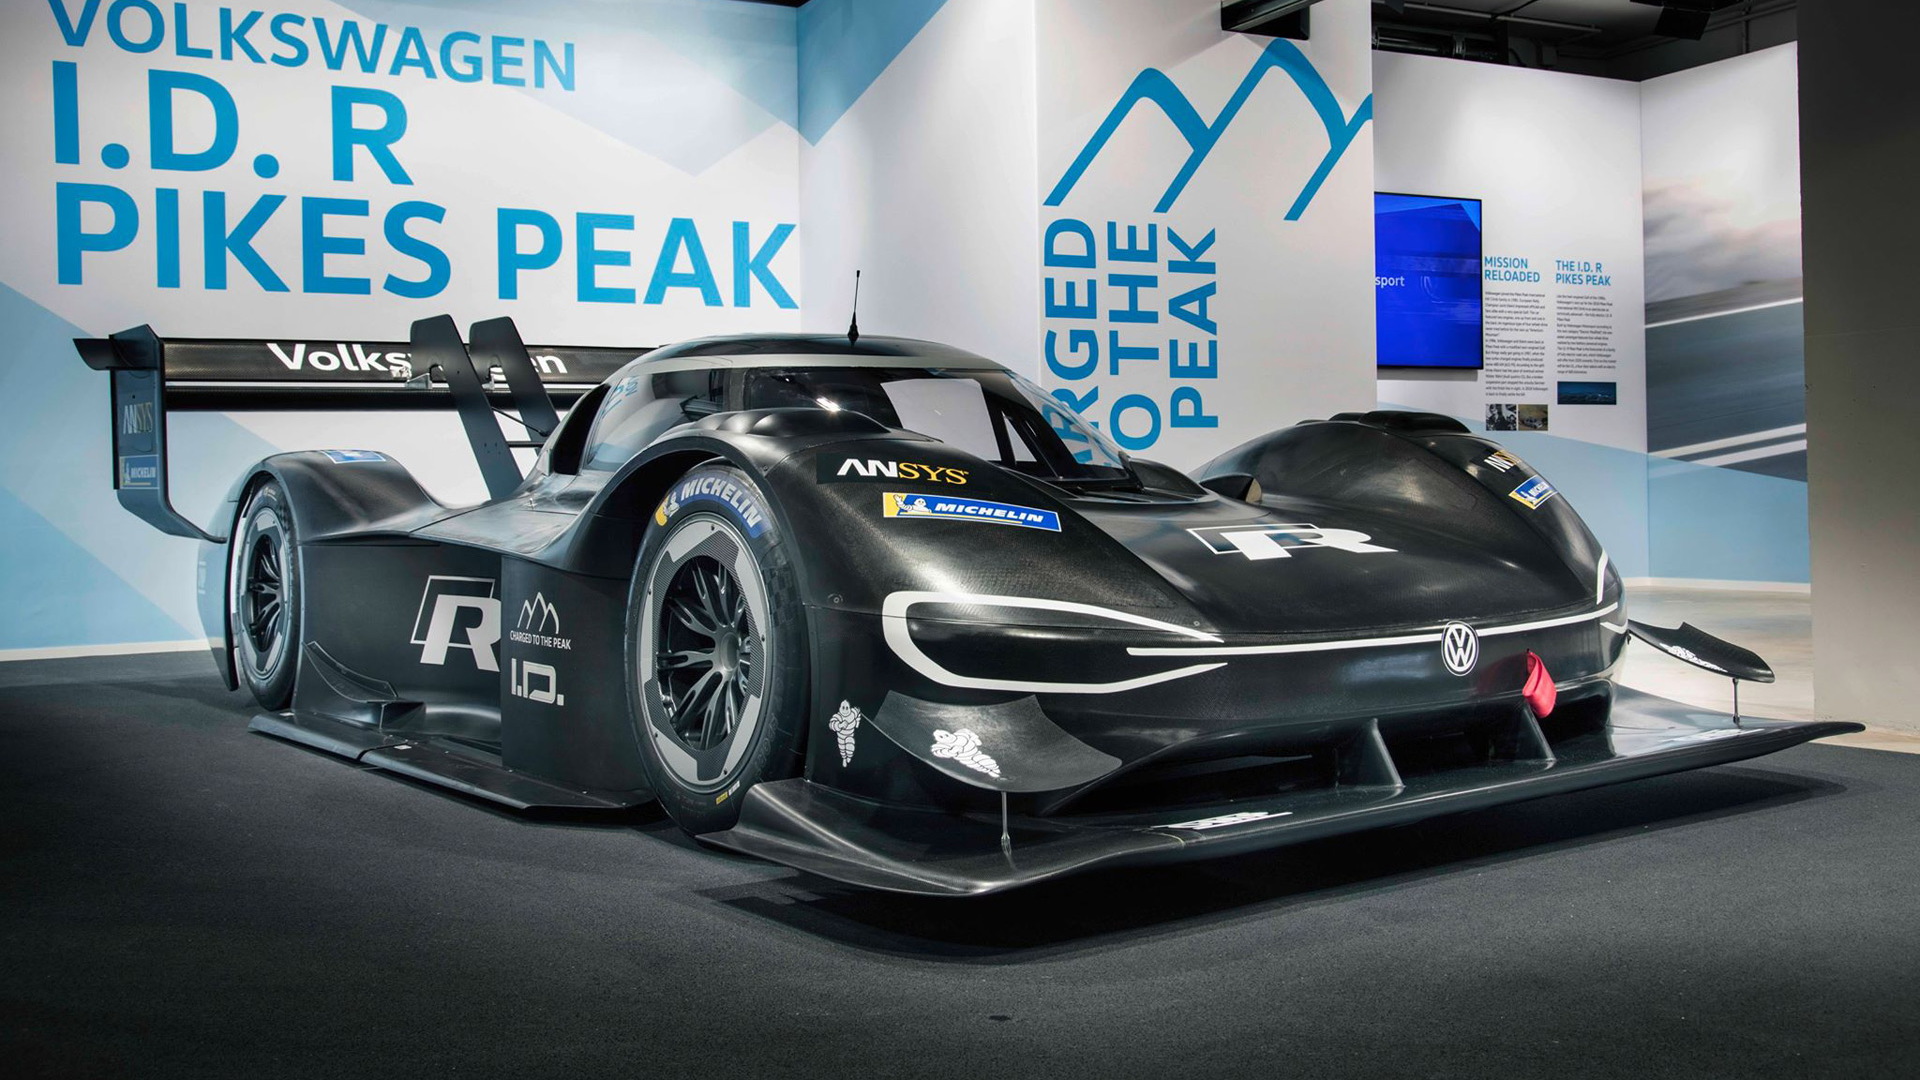 2018 Volkswagen ID R Pikes Peak race car